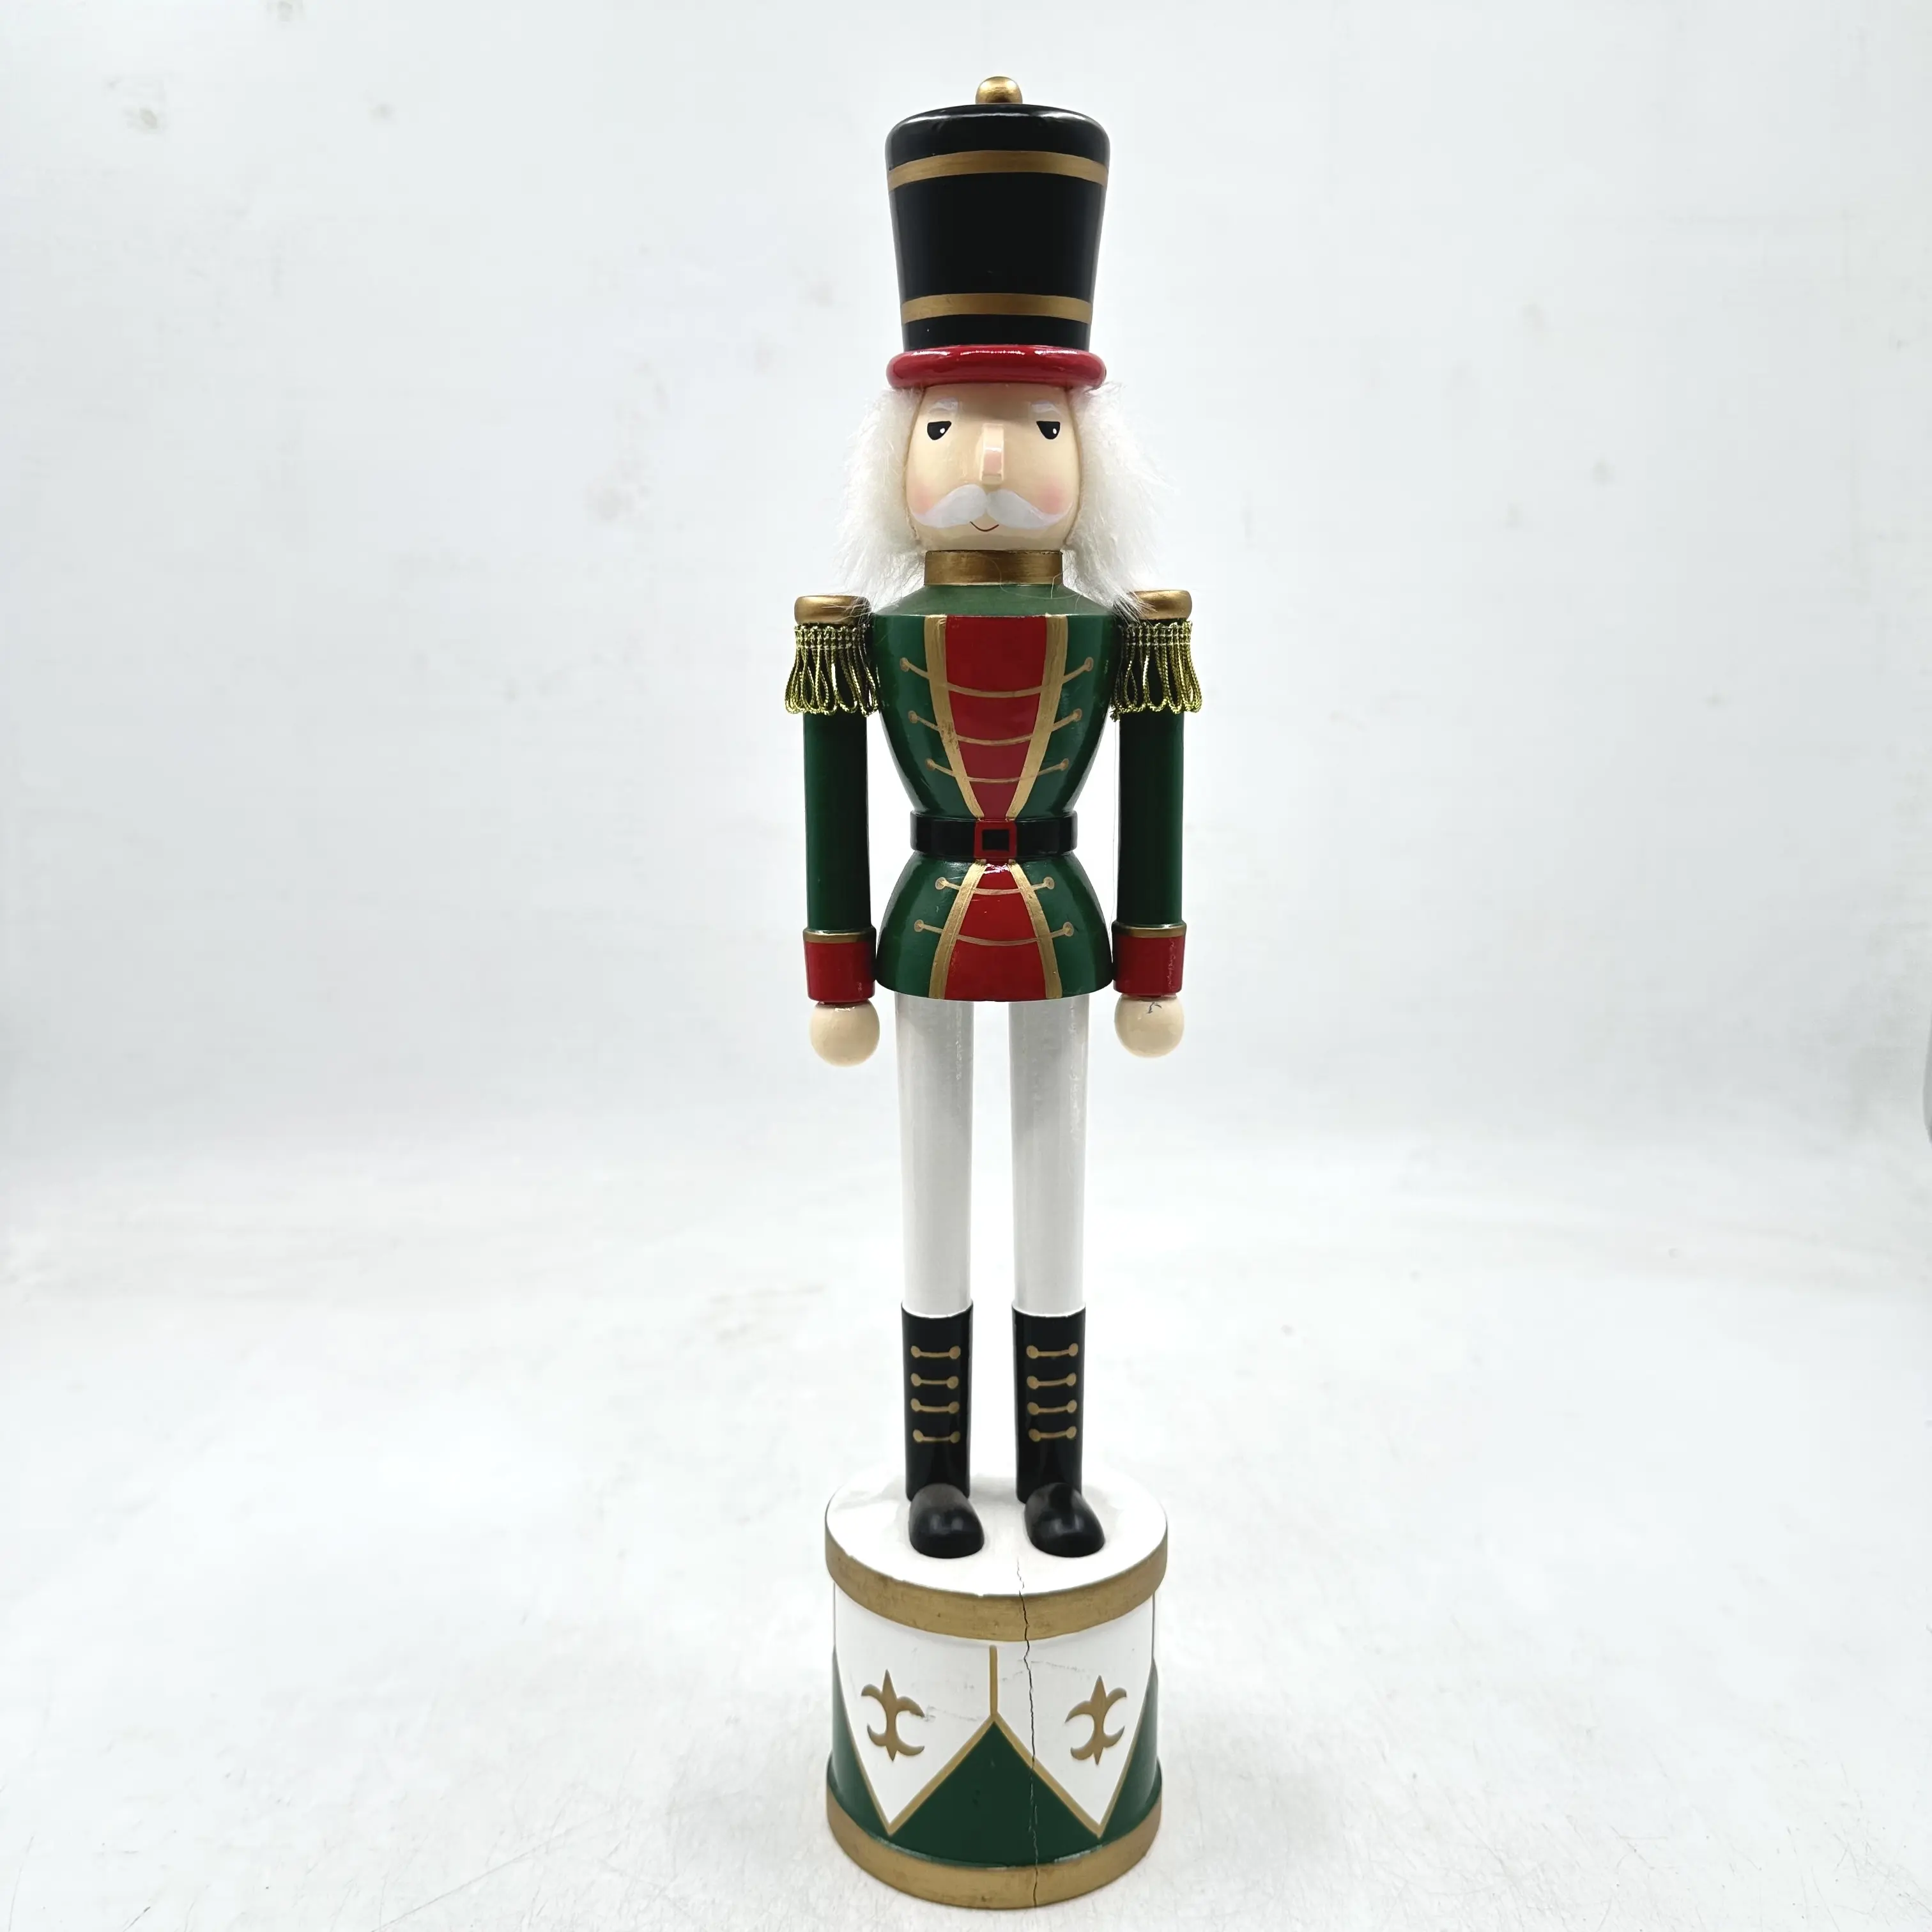 Nussknacker Spielzeug Soldat Ornamente Dekorative Grüne Nussknacker Anhänger Für Festliche Dekoration